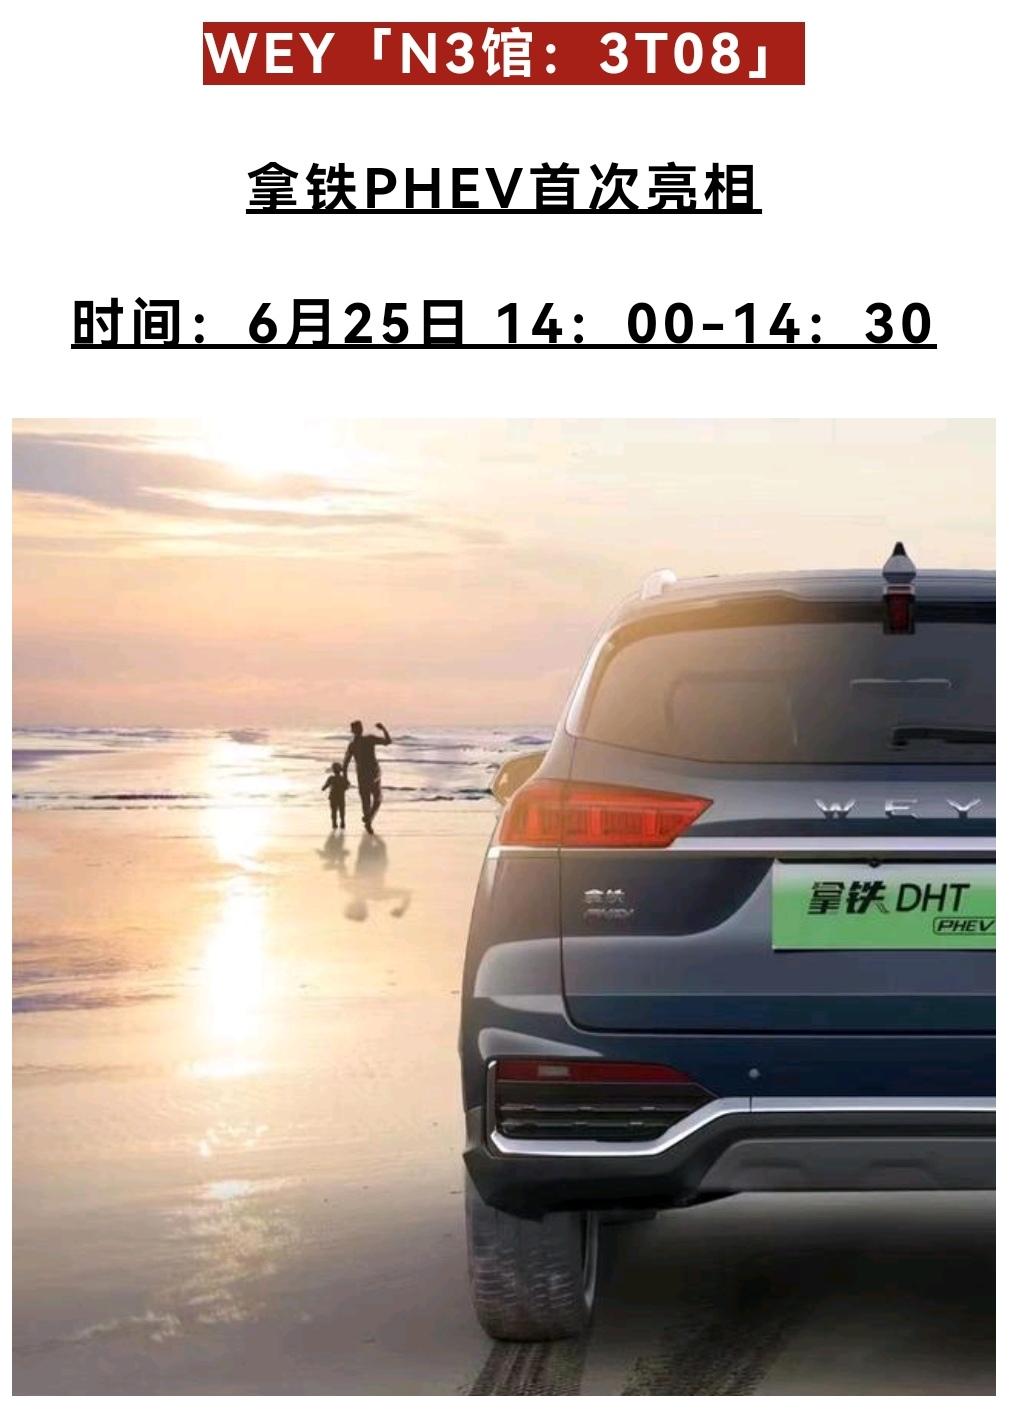 魏牌拿铁DHT-PHEV 重庆车展的最后一天，还会有这个车的发布会吗？不会只是单纯的只在车展上亮个相吧，这操作着实看不懂